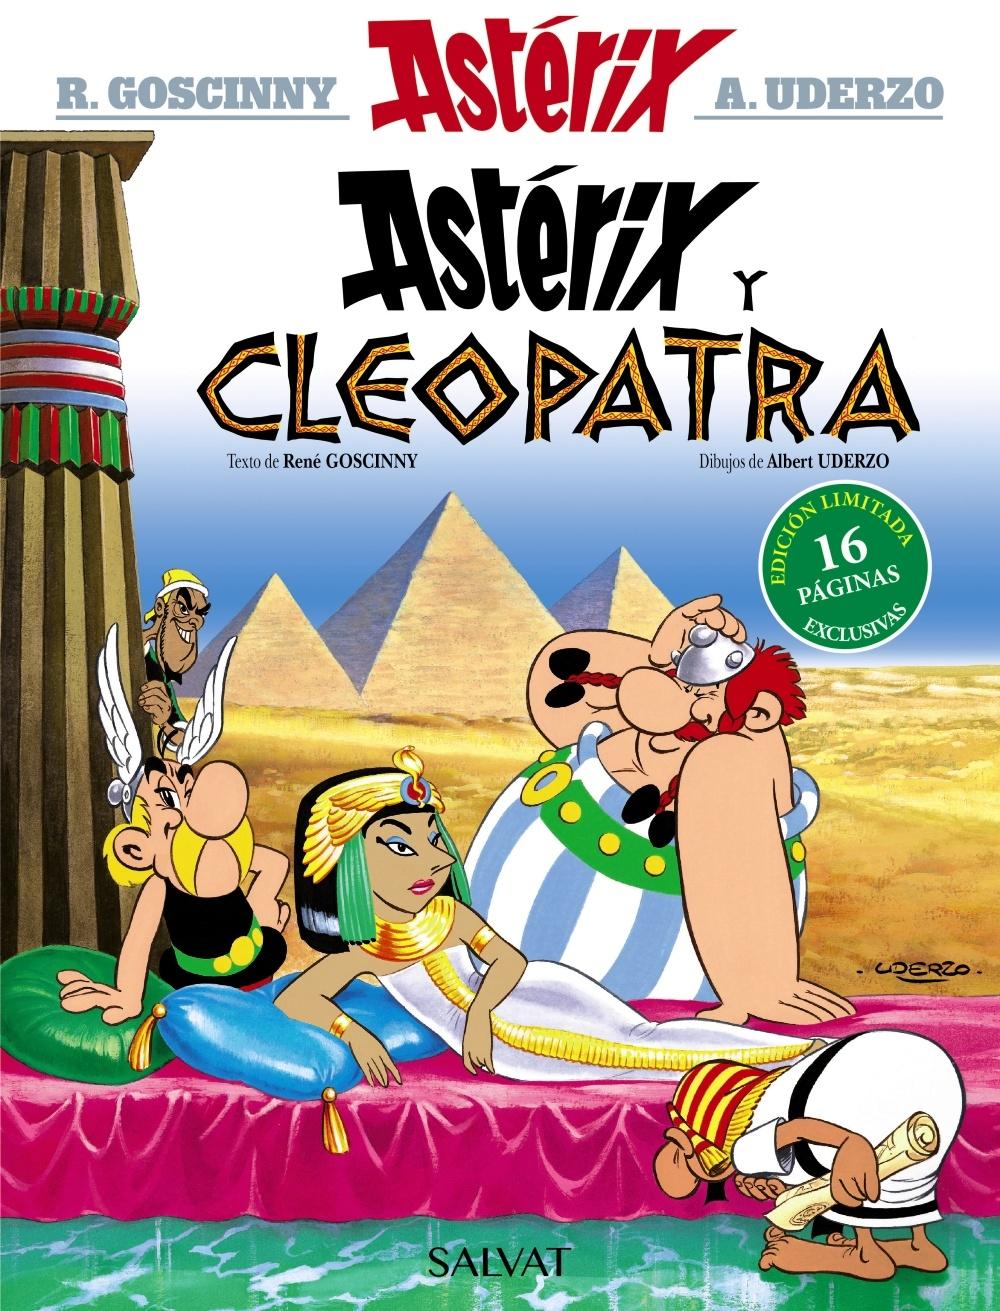 Astérix y Cleopatra. Edición 2021 "Astérix 6"